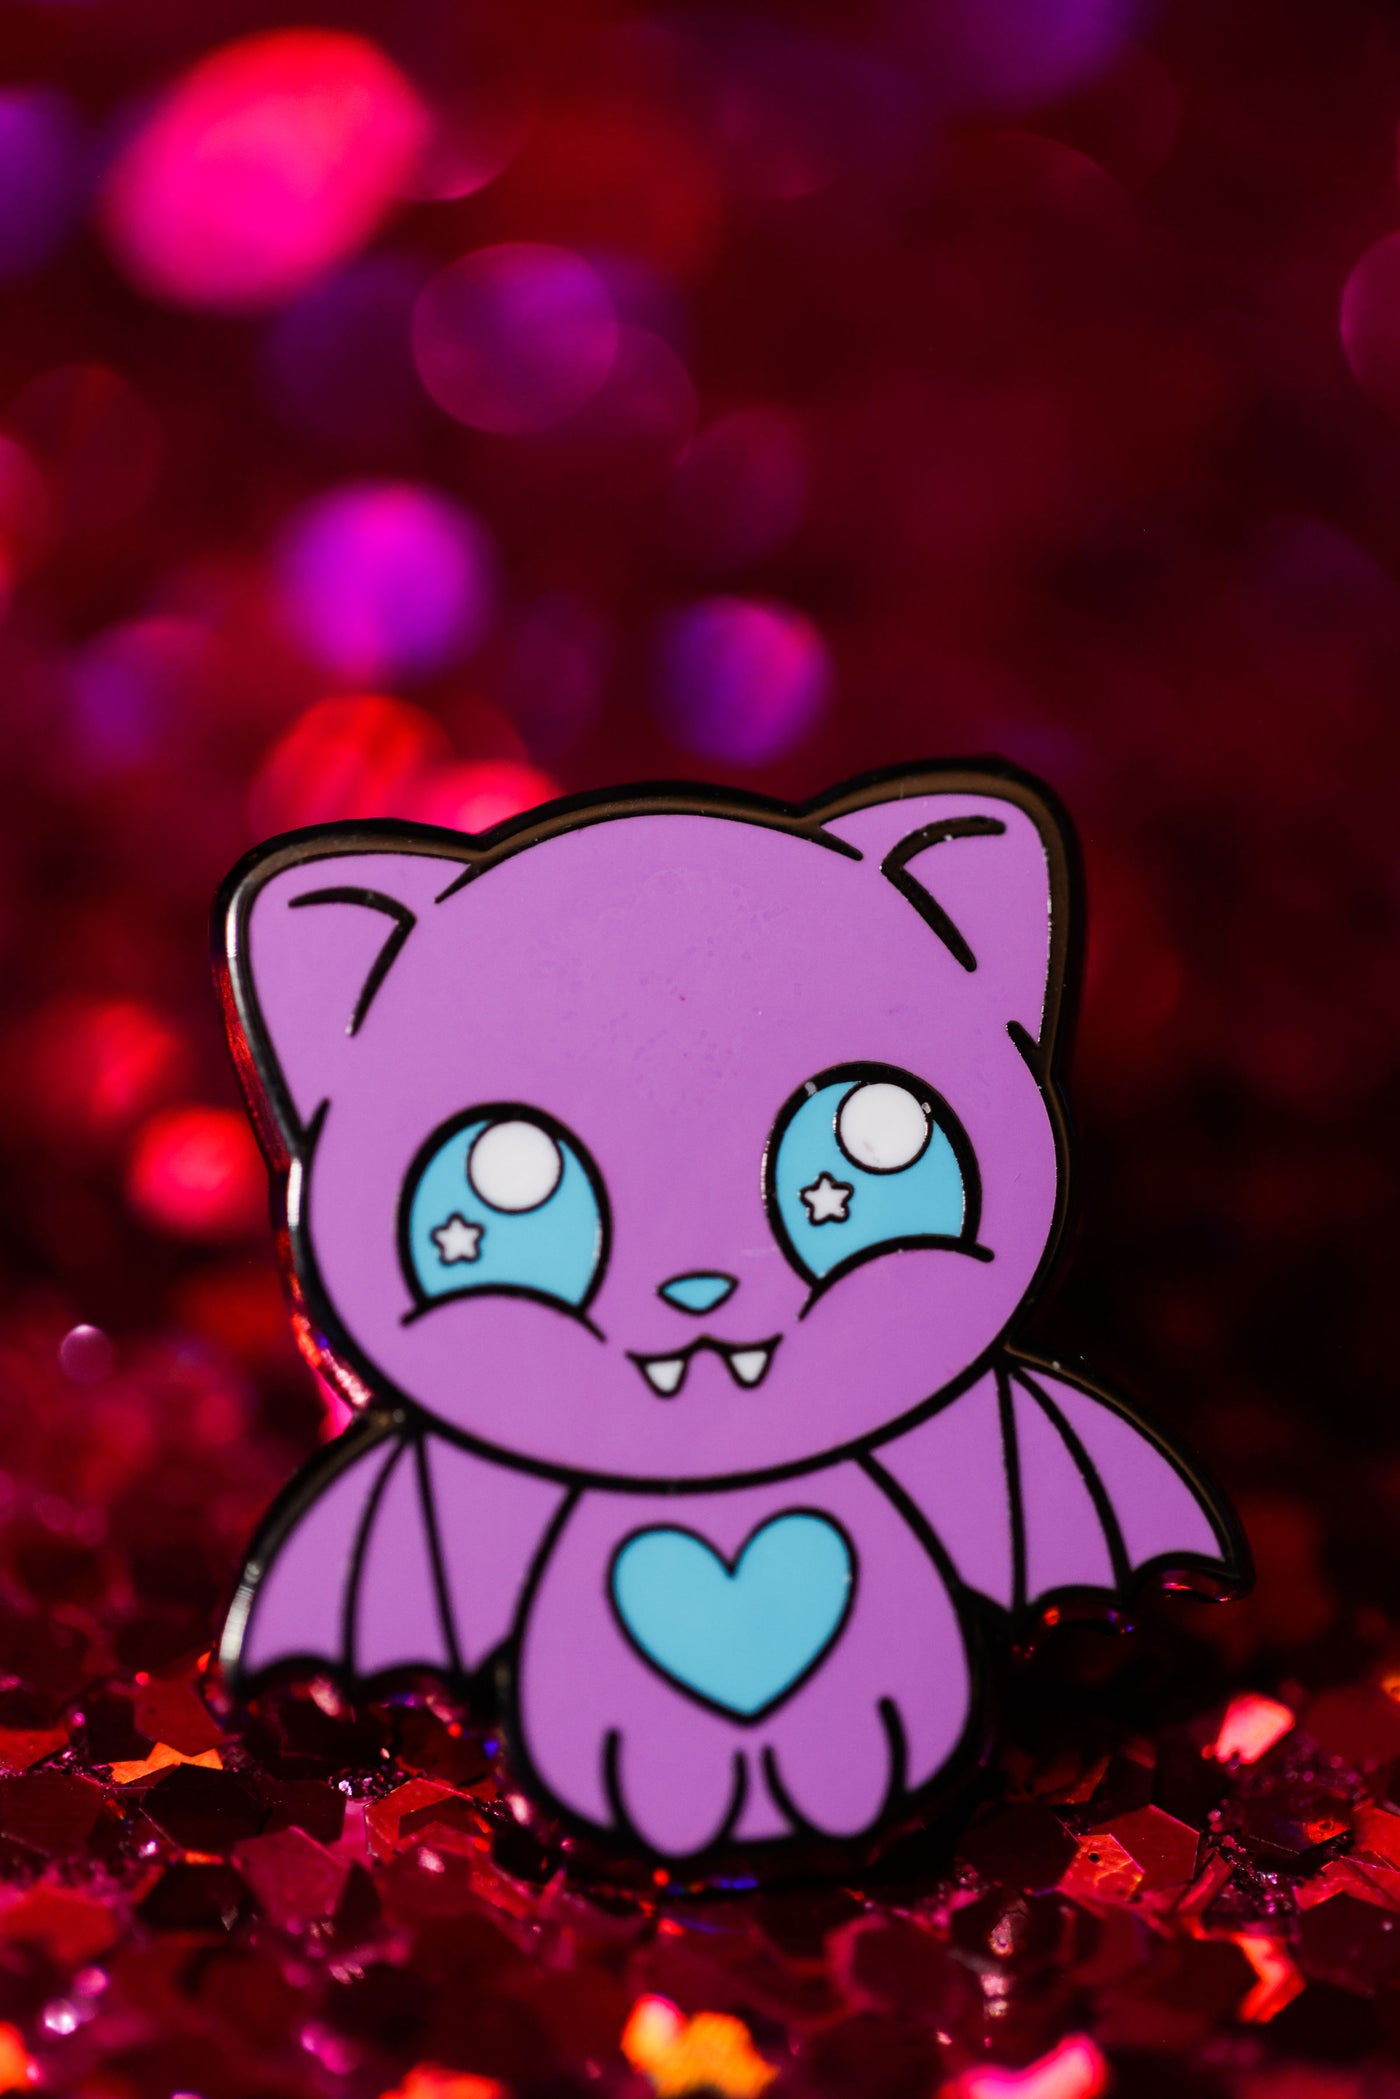 Bubble Gum Bat Cat Lace Charm - Cute Halloween Collection